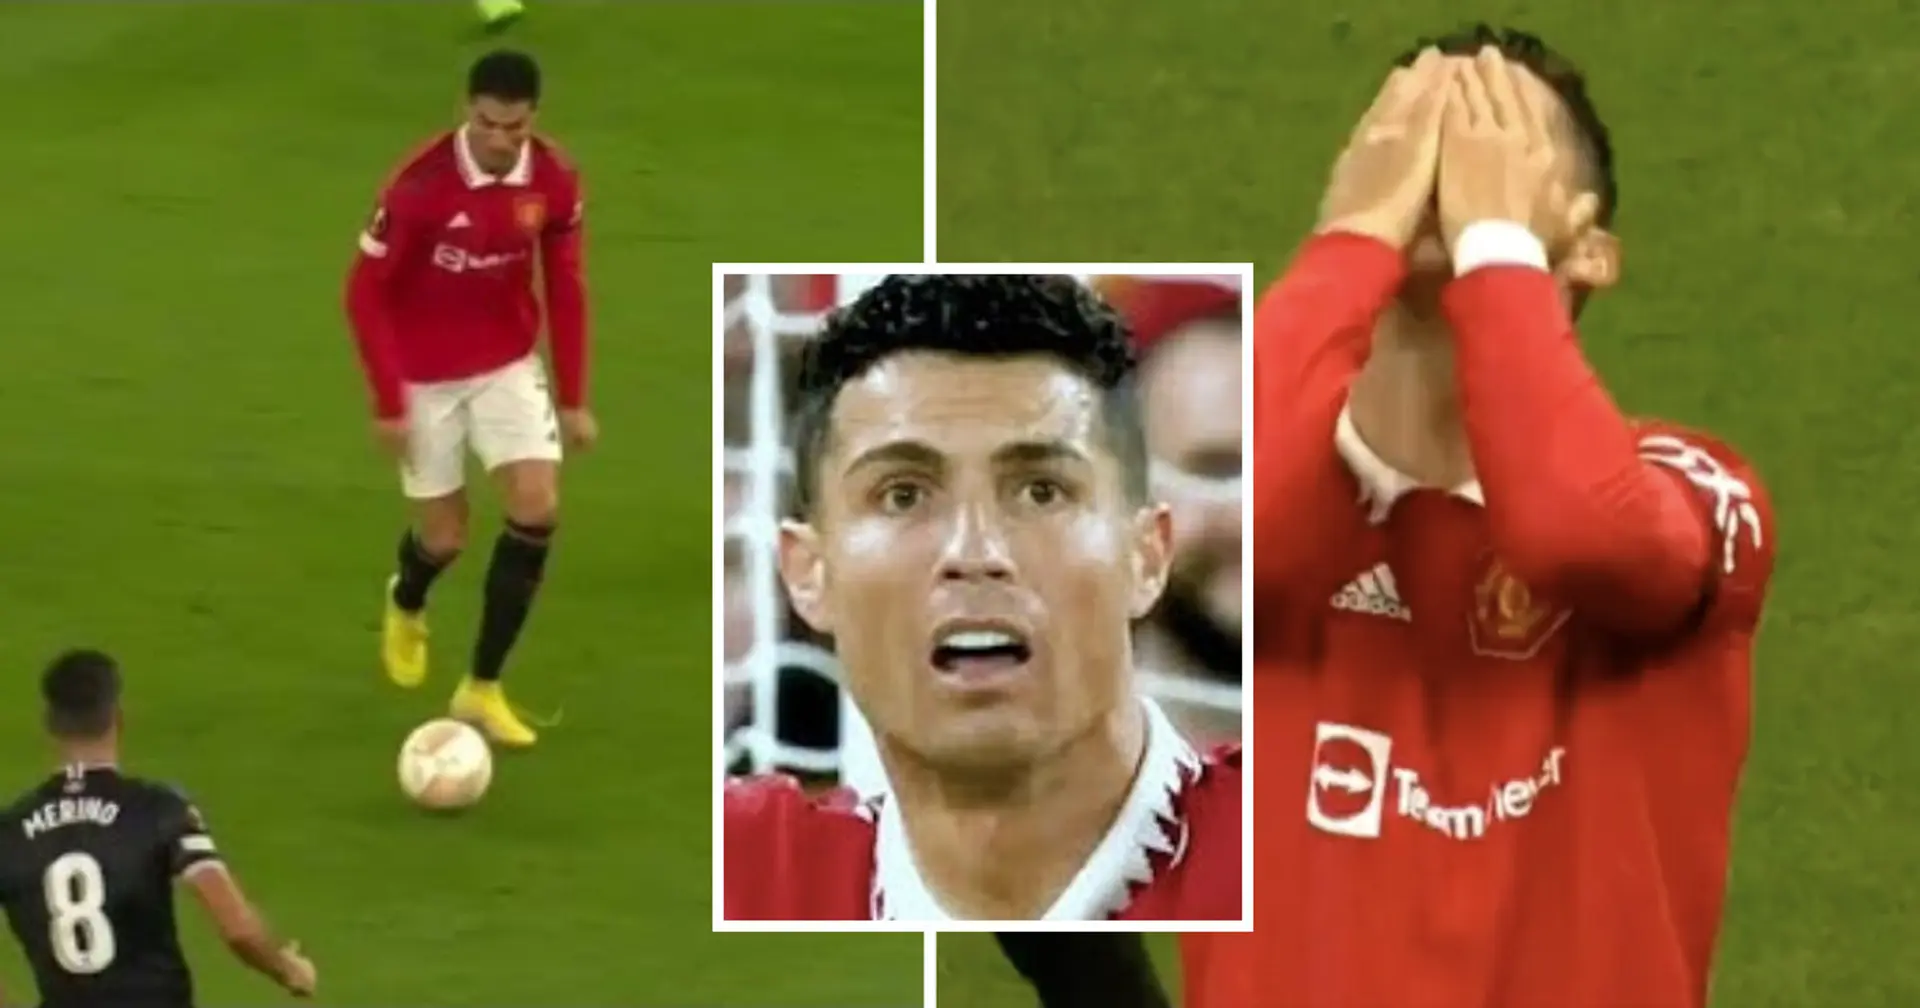 Ronaldo hatte gegen Sociedad eine perfekte Chance - doch statt aufs Tor zu schießen, entschied er sich für einen Trick 